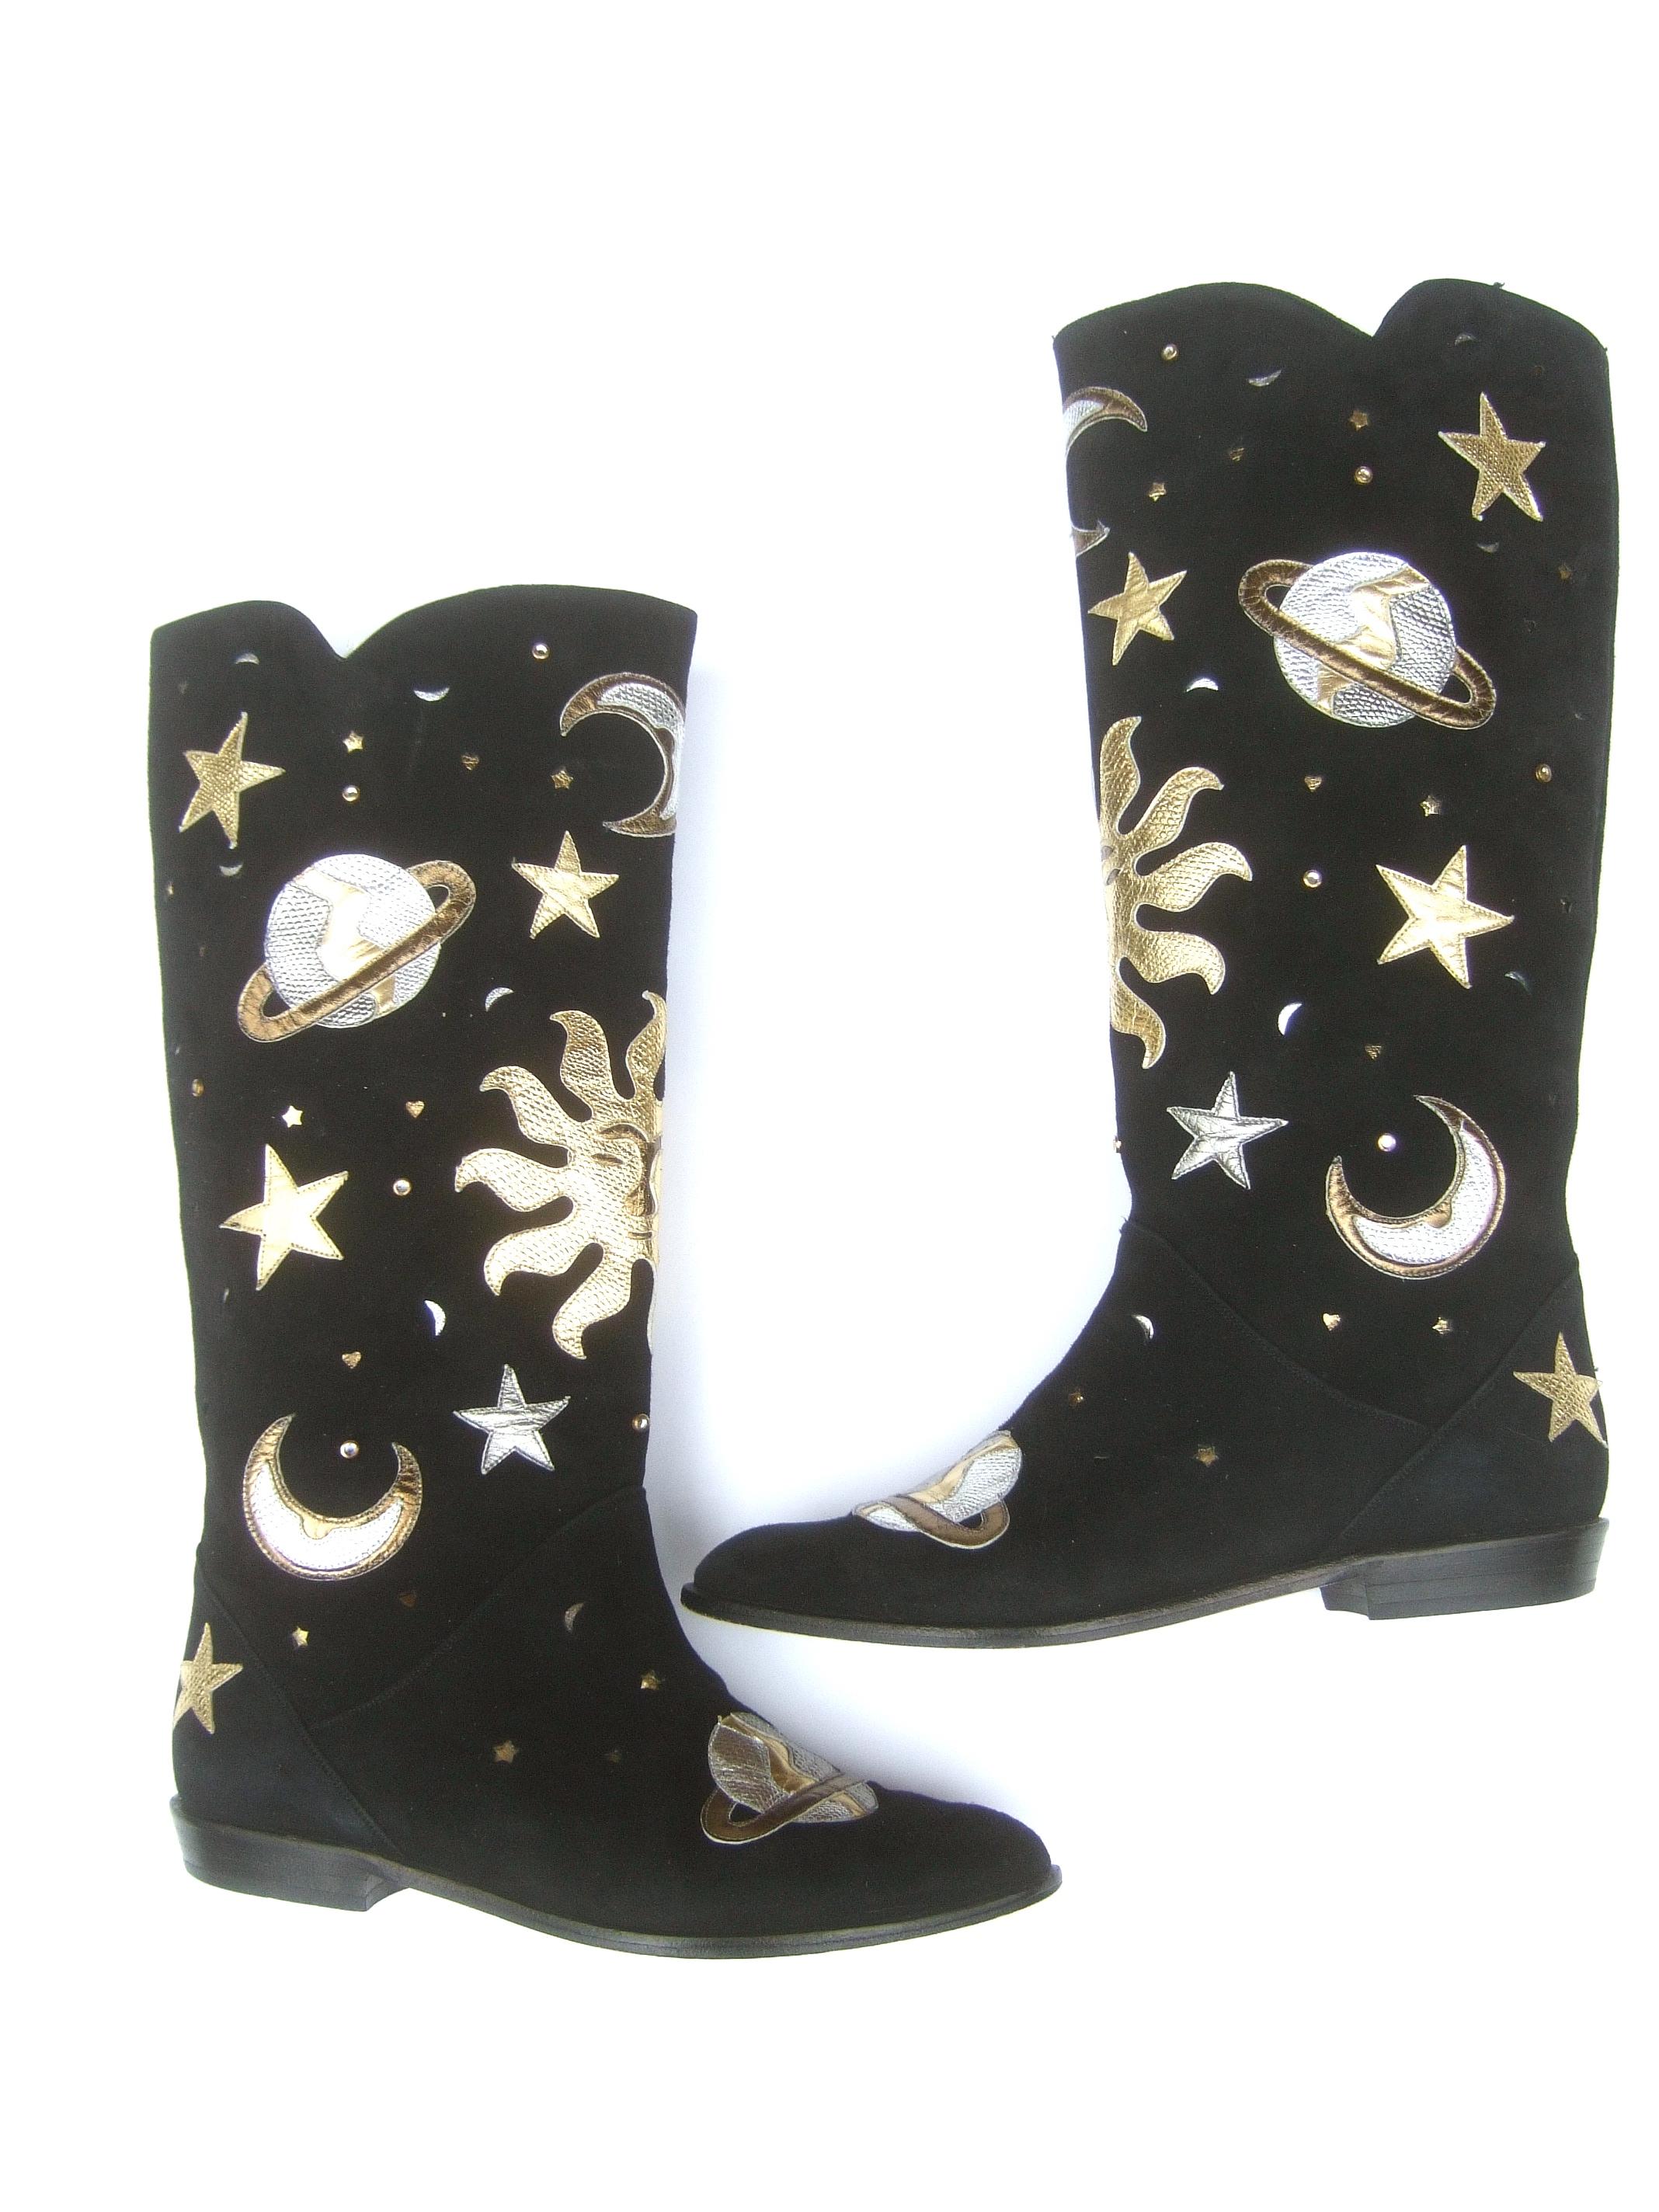 Celestial Black Suede Metallic Appliqué Moons, Stars, Planets & Sun Boots c 1990 9